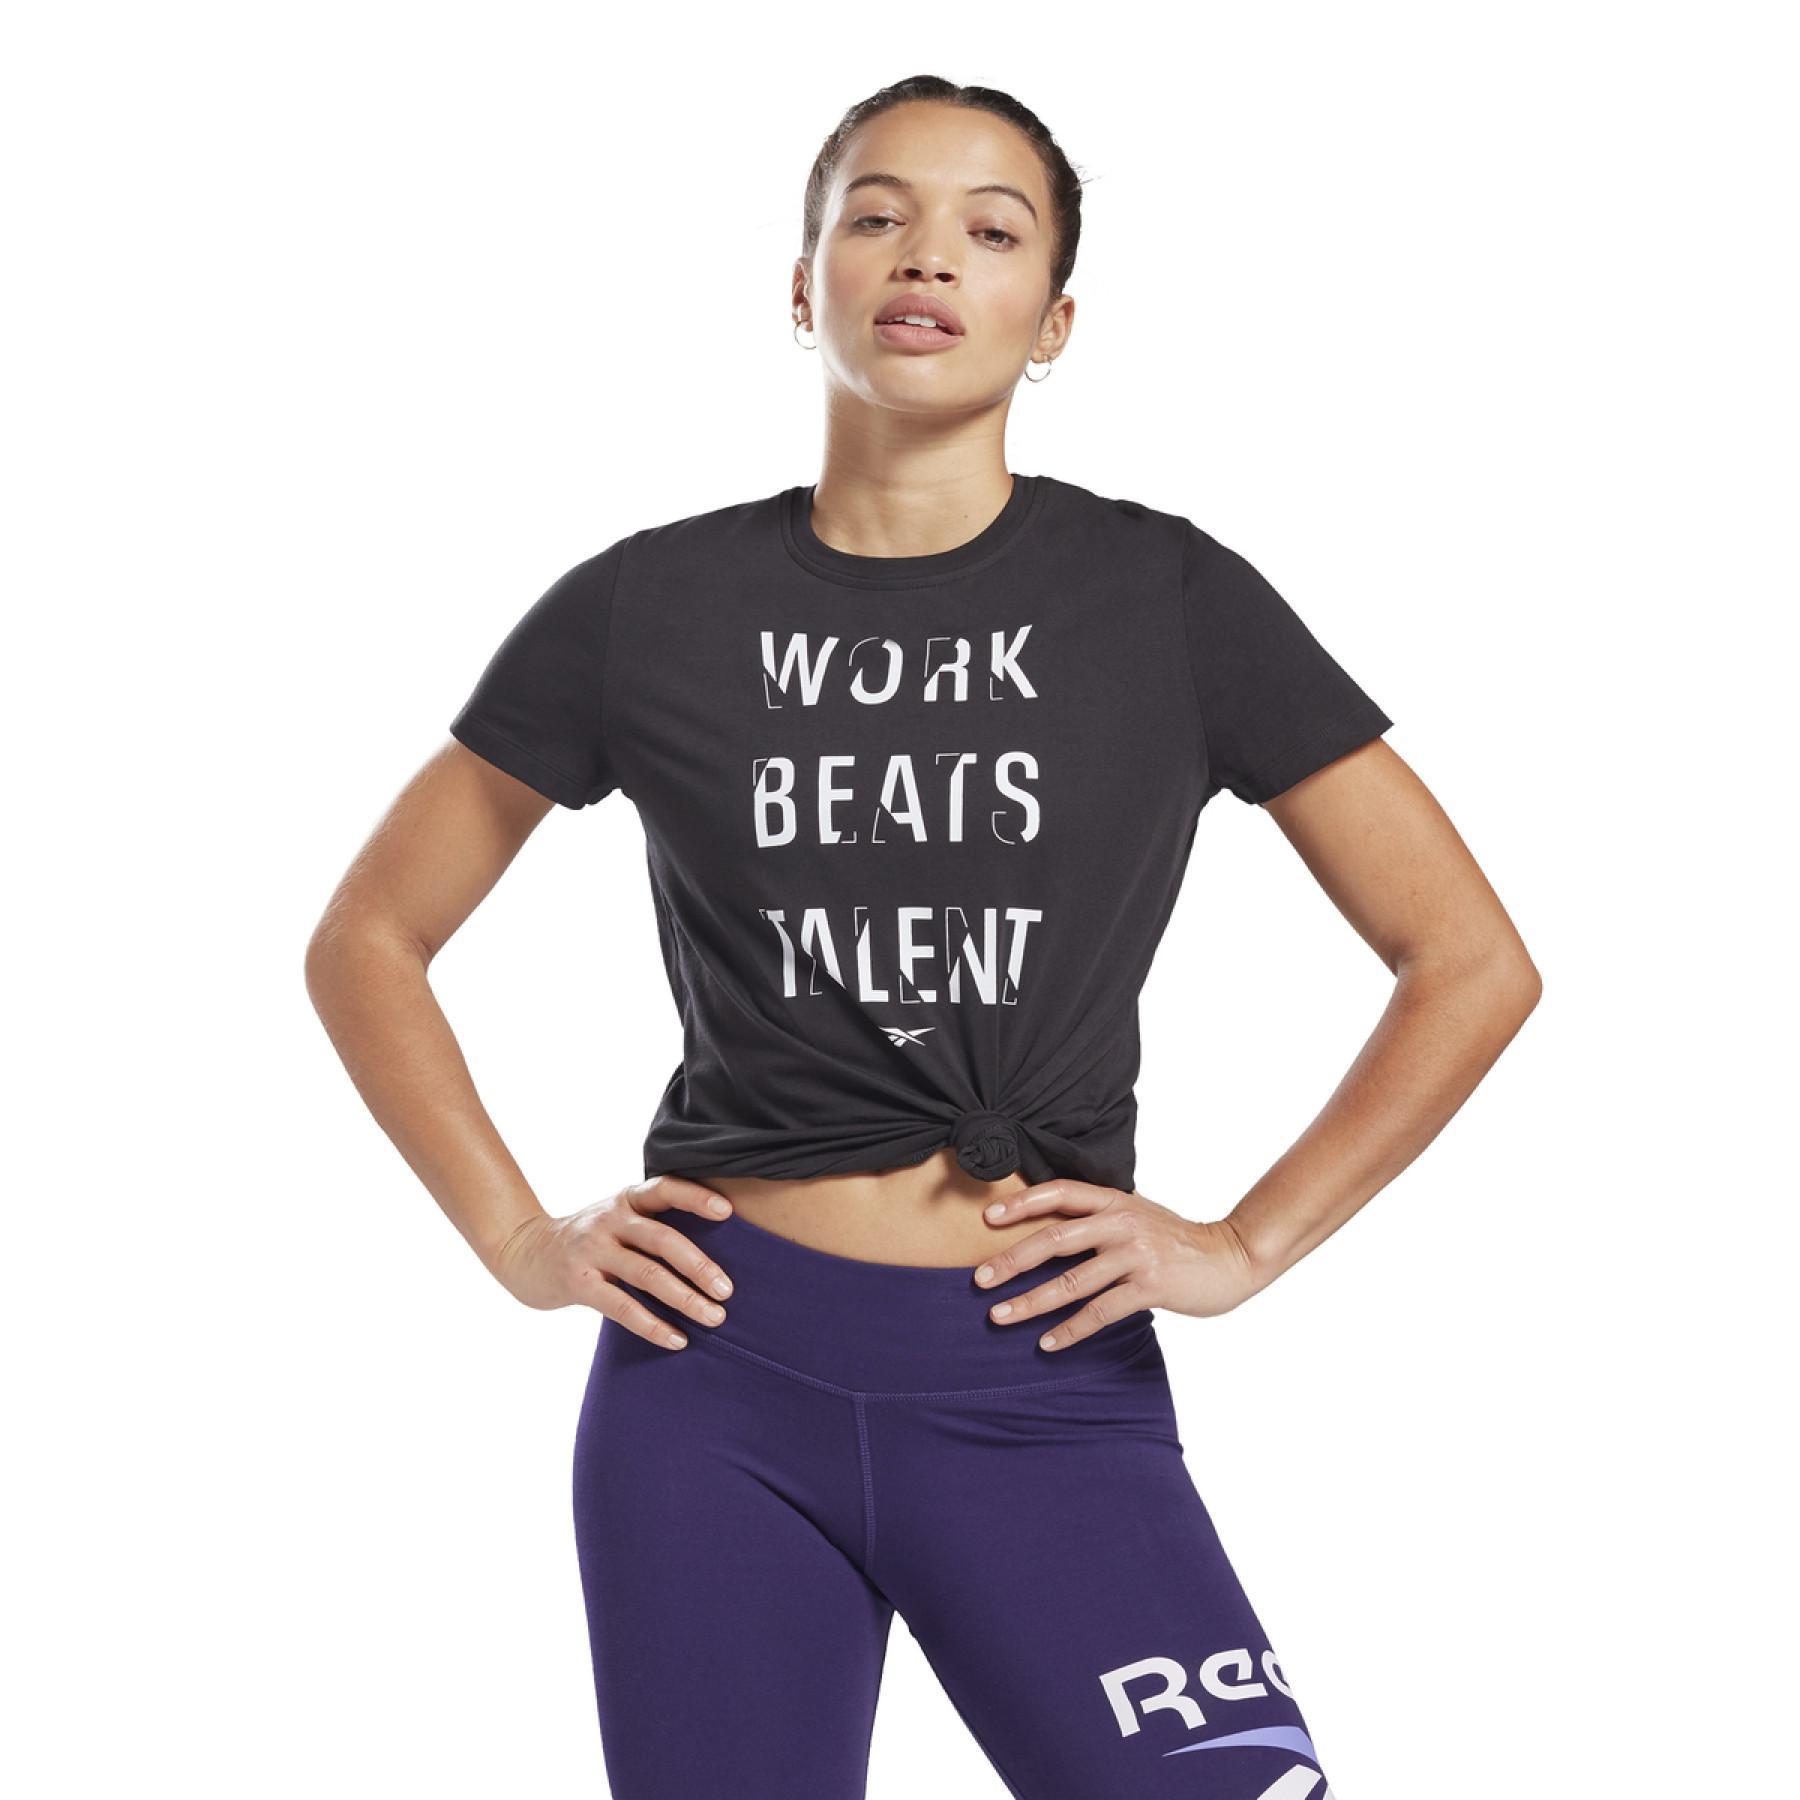 T-shirt femme Reebok Work Beats Talent Graphic